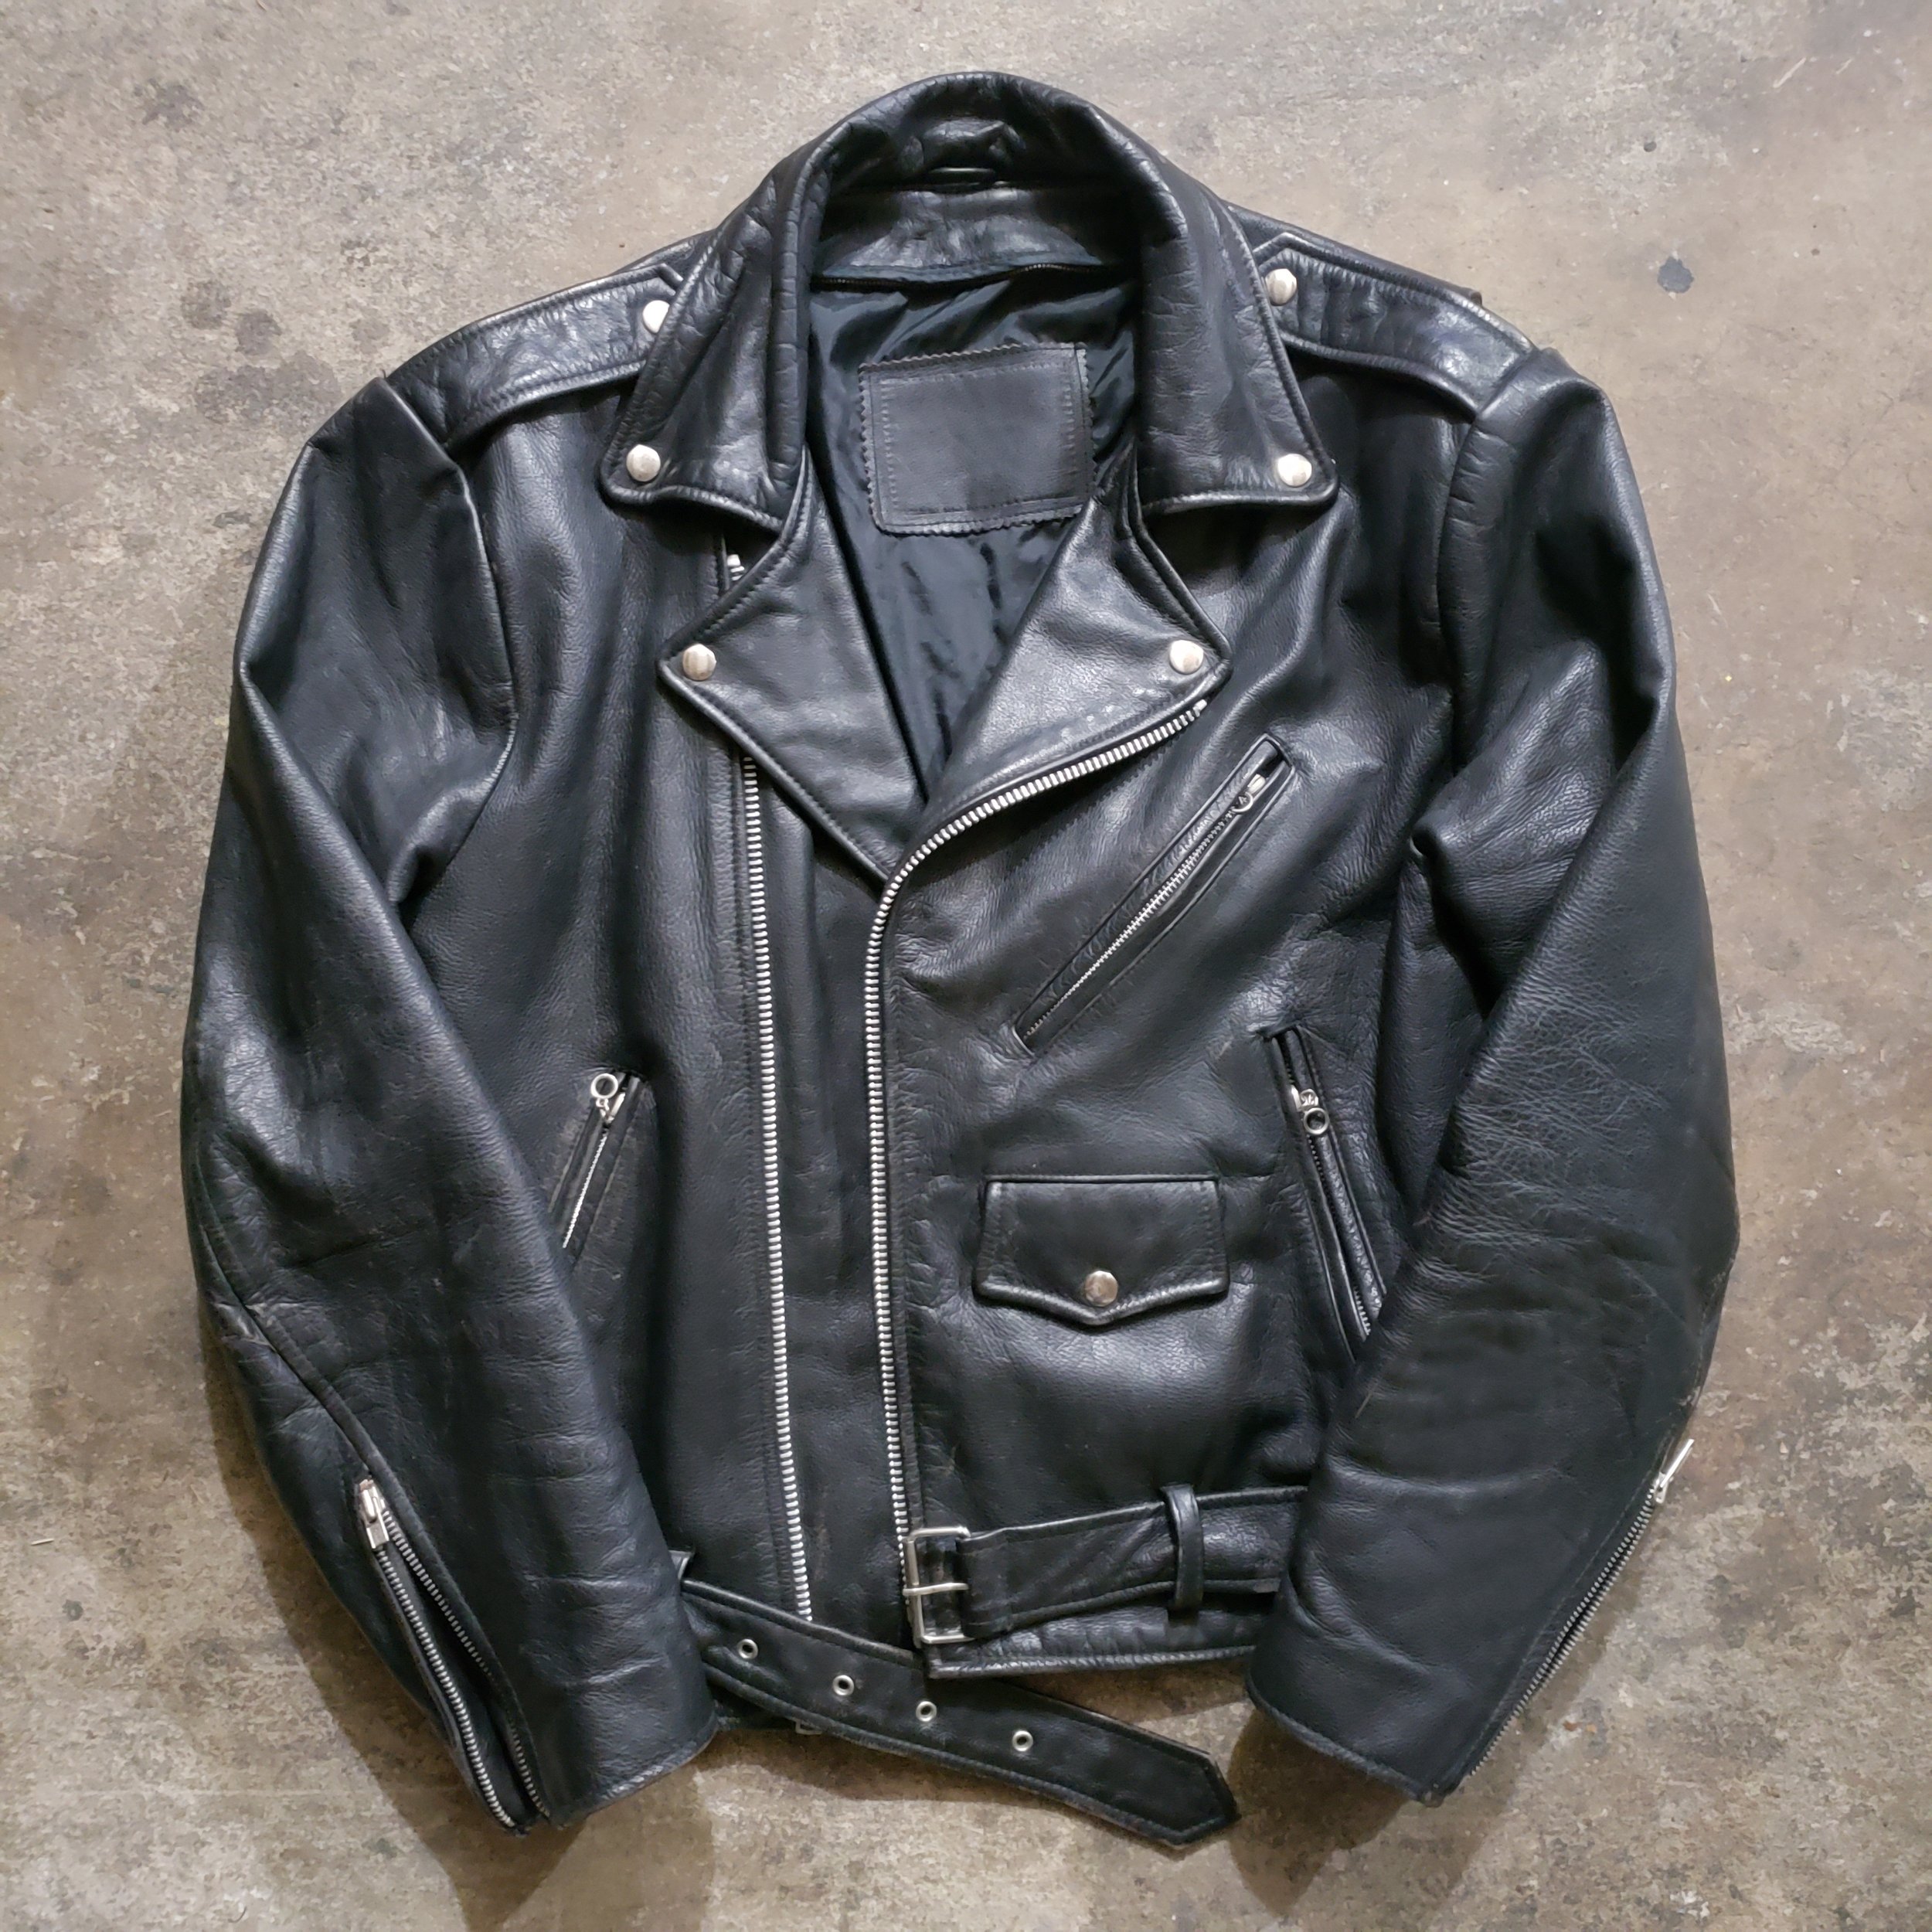 Vintage Black Leather Motorcycle Jacket — Poet Motors